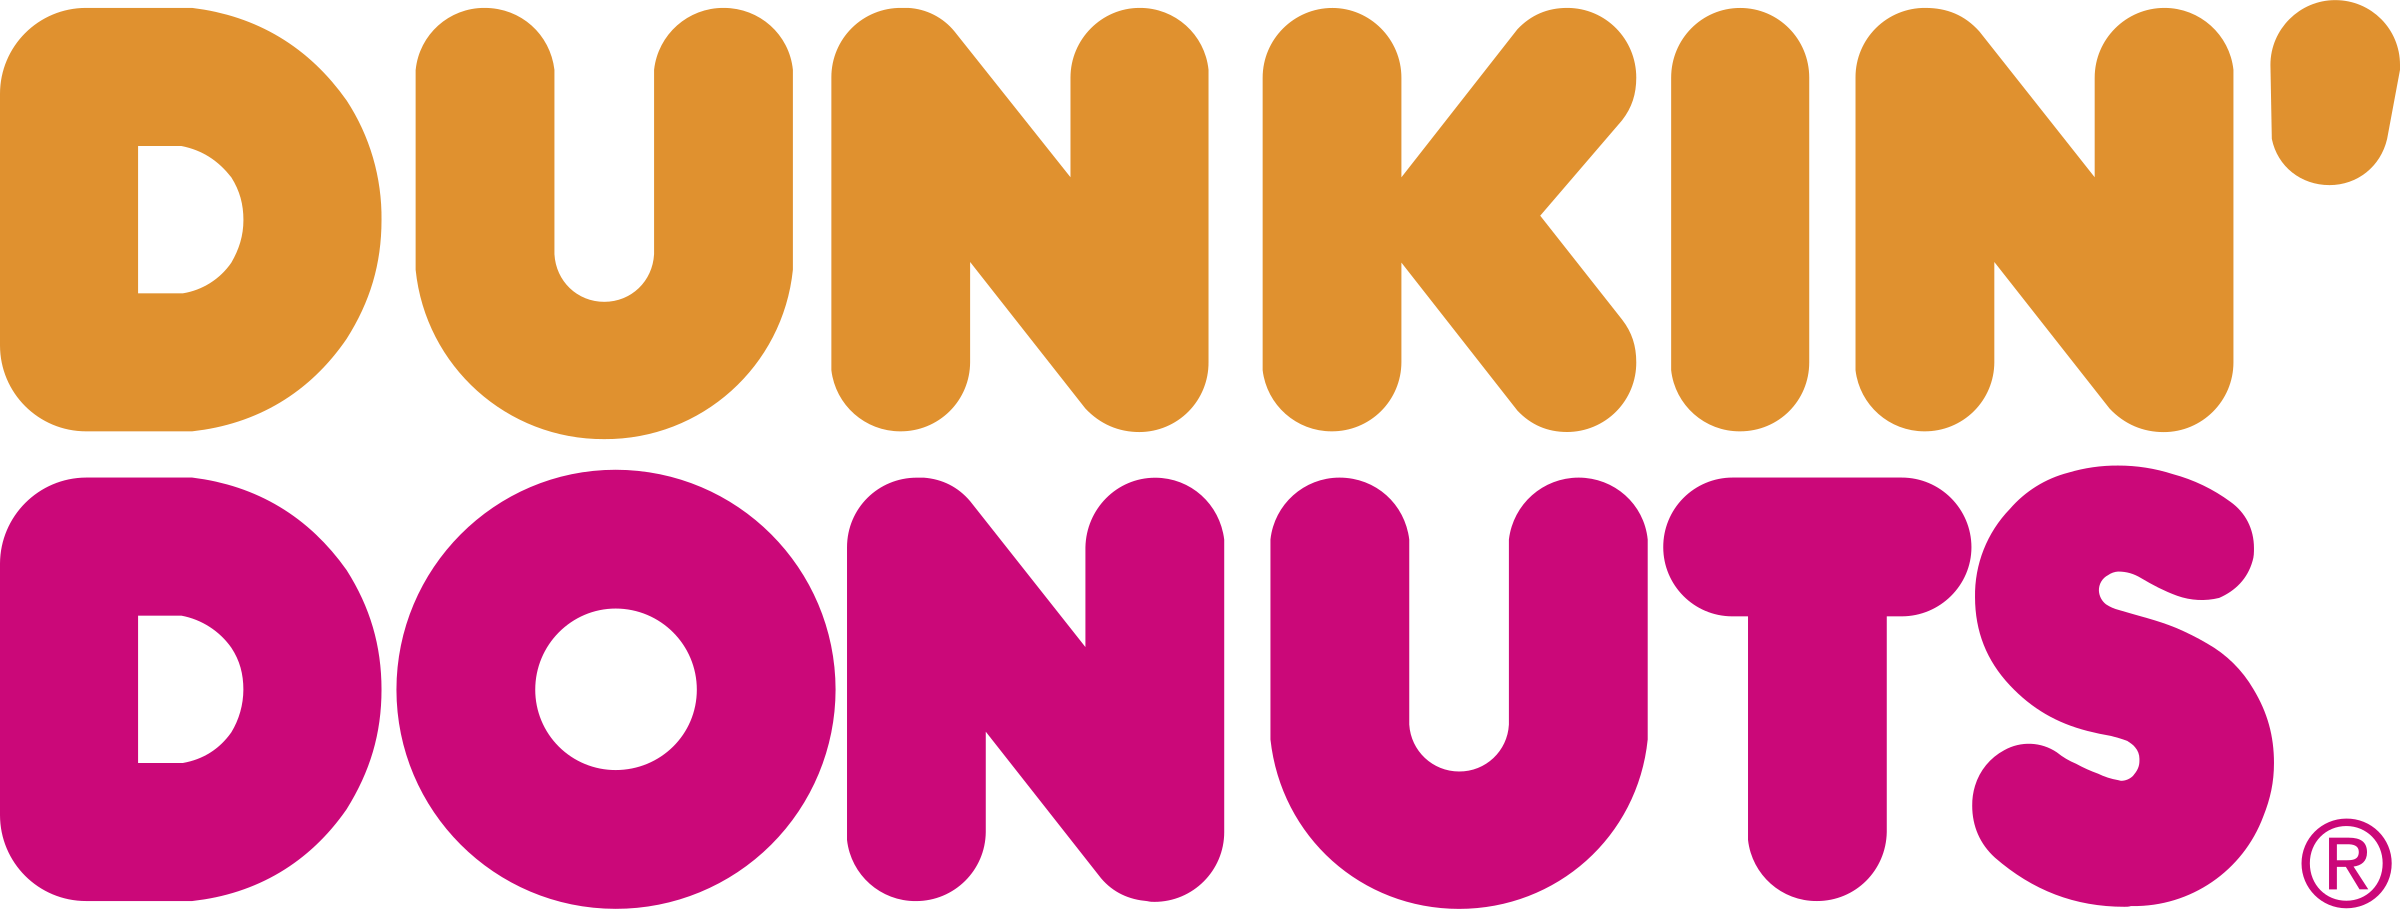 Bilderesultat for dunkin donuts